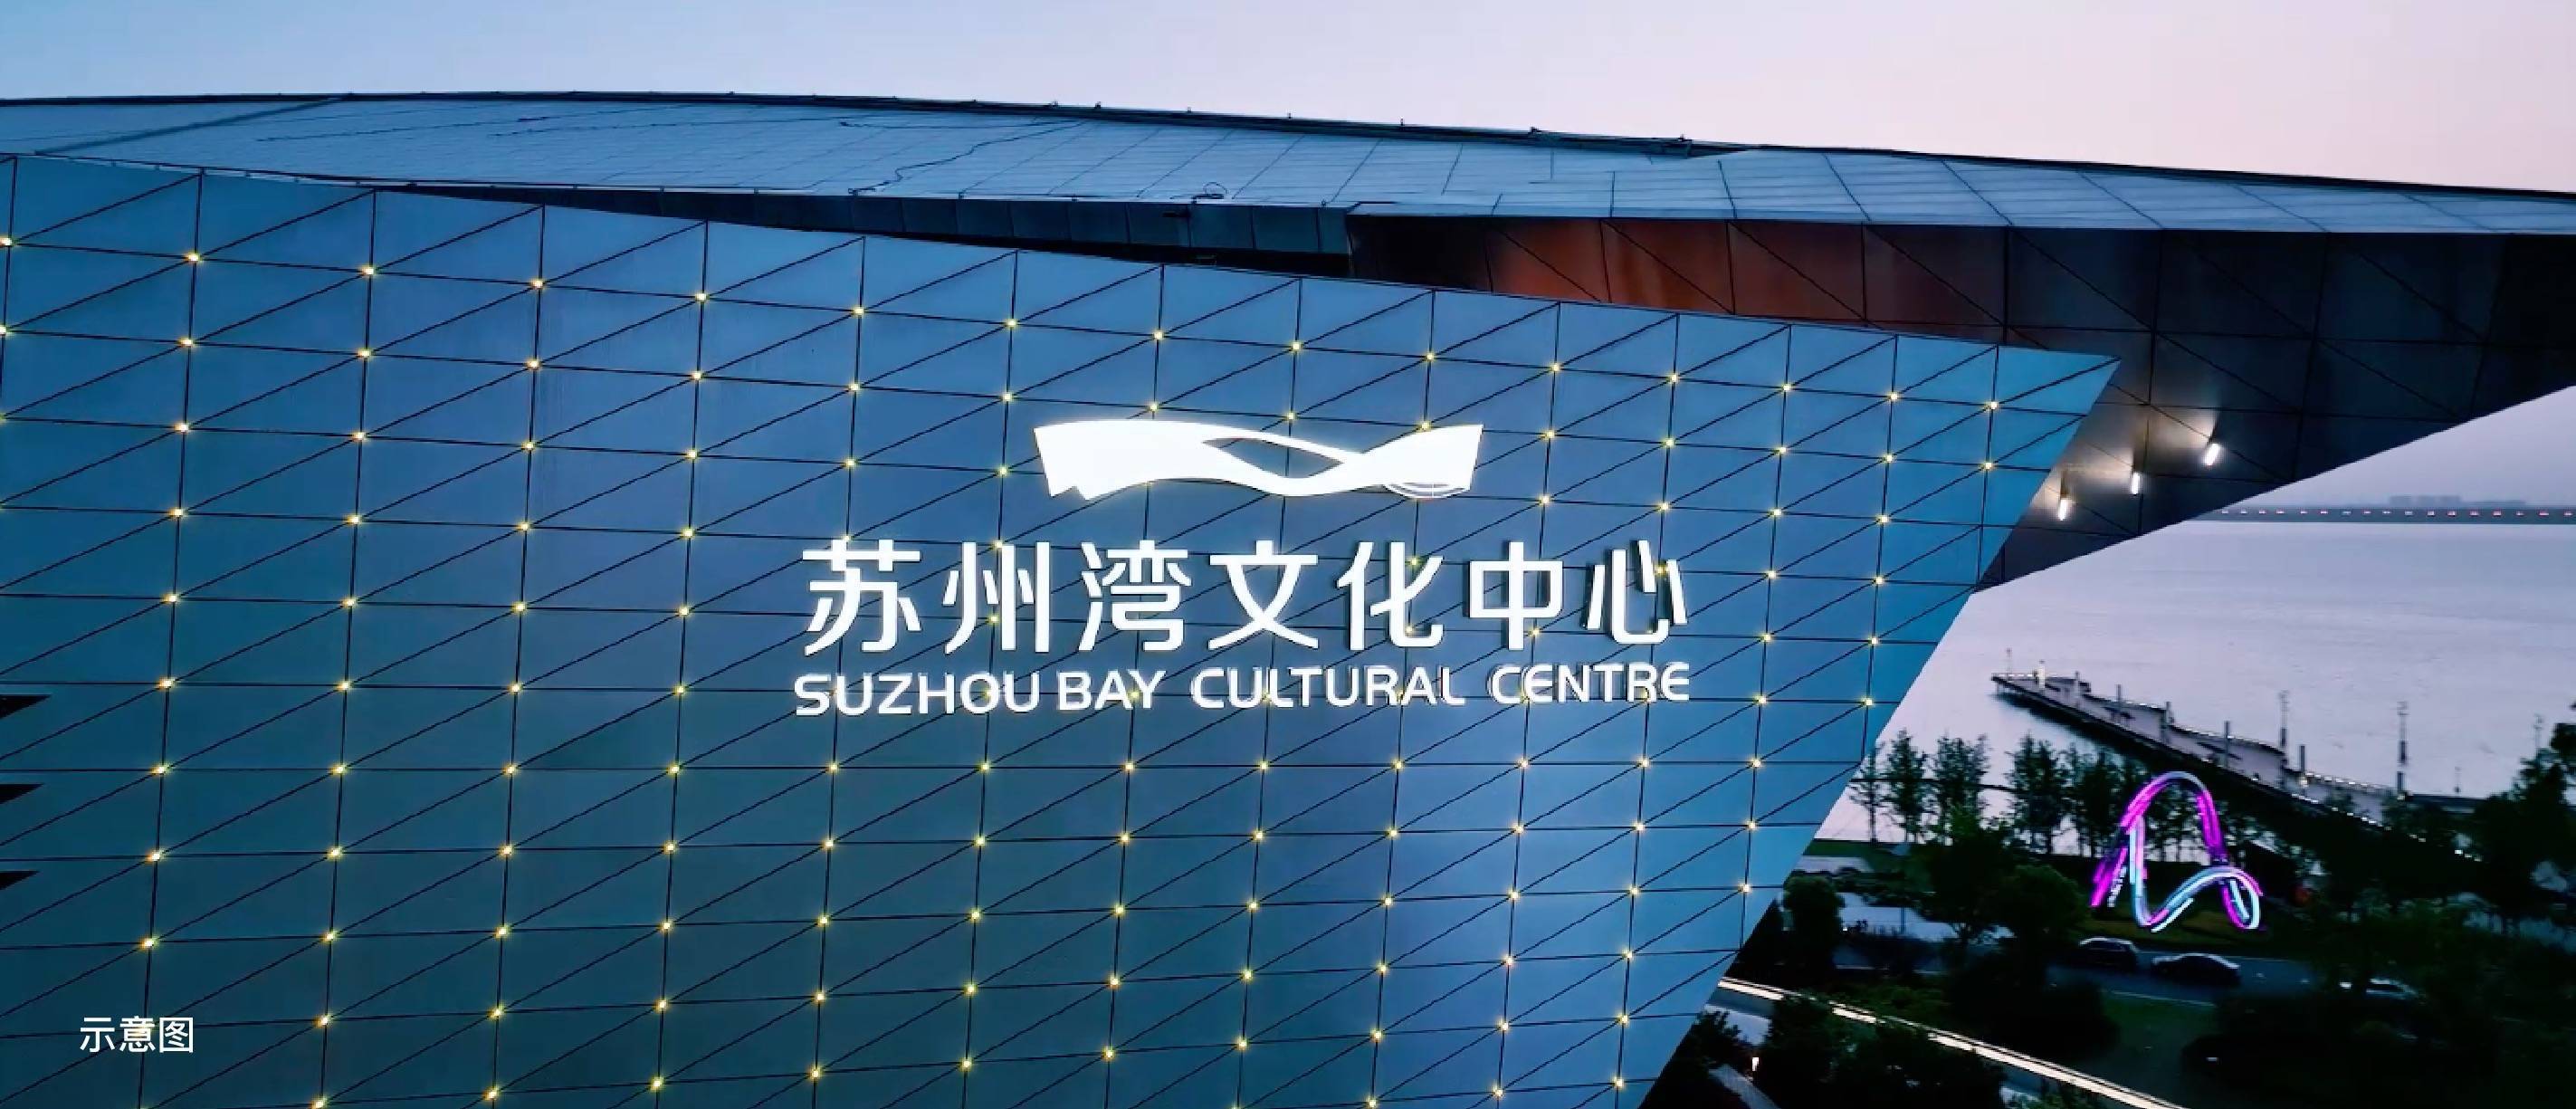 36洞国际标准高尔夫球场东太湖国际游艇俱乐部 —— 中国最大